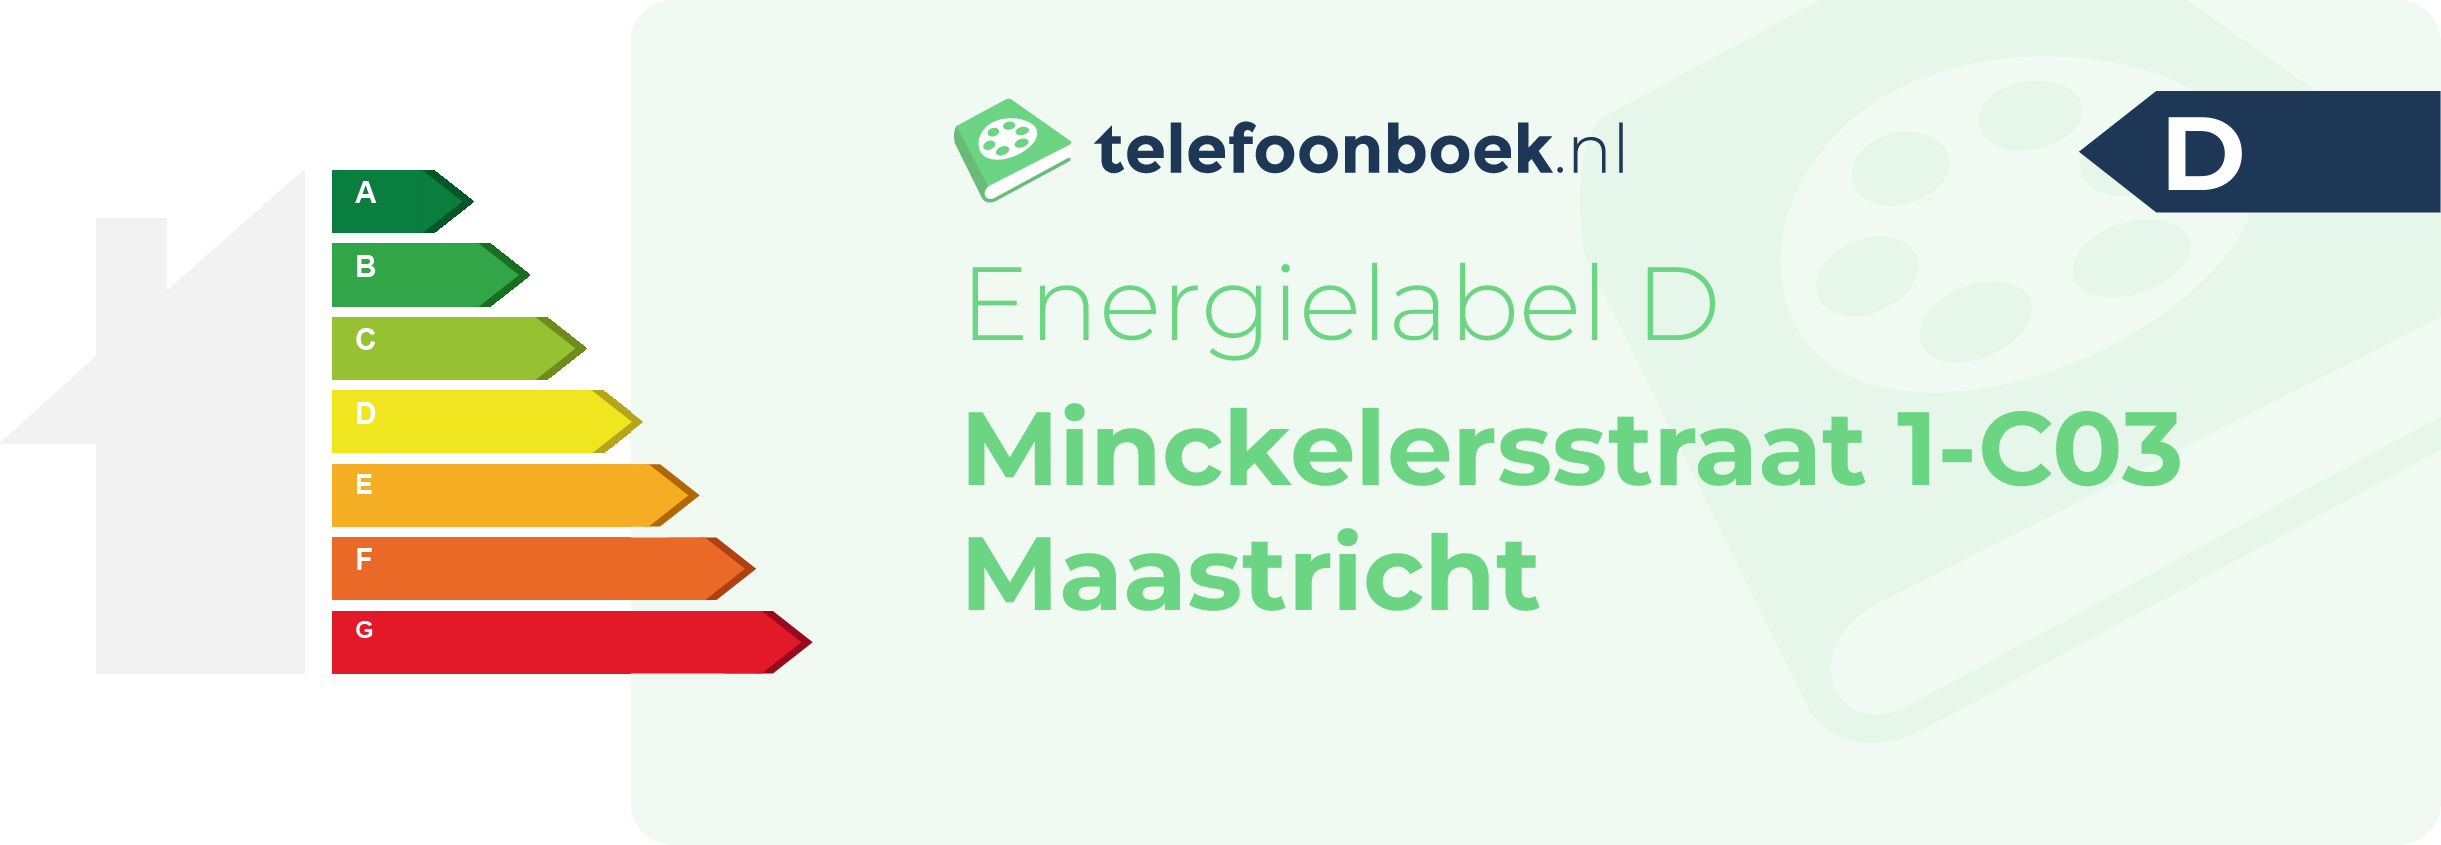 Energielabel Minckelersstraat 1-C03 Maastricht